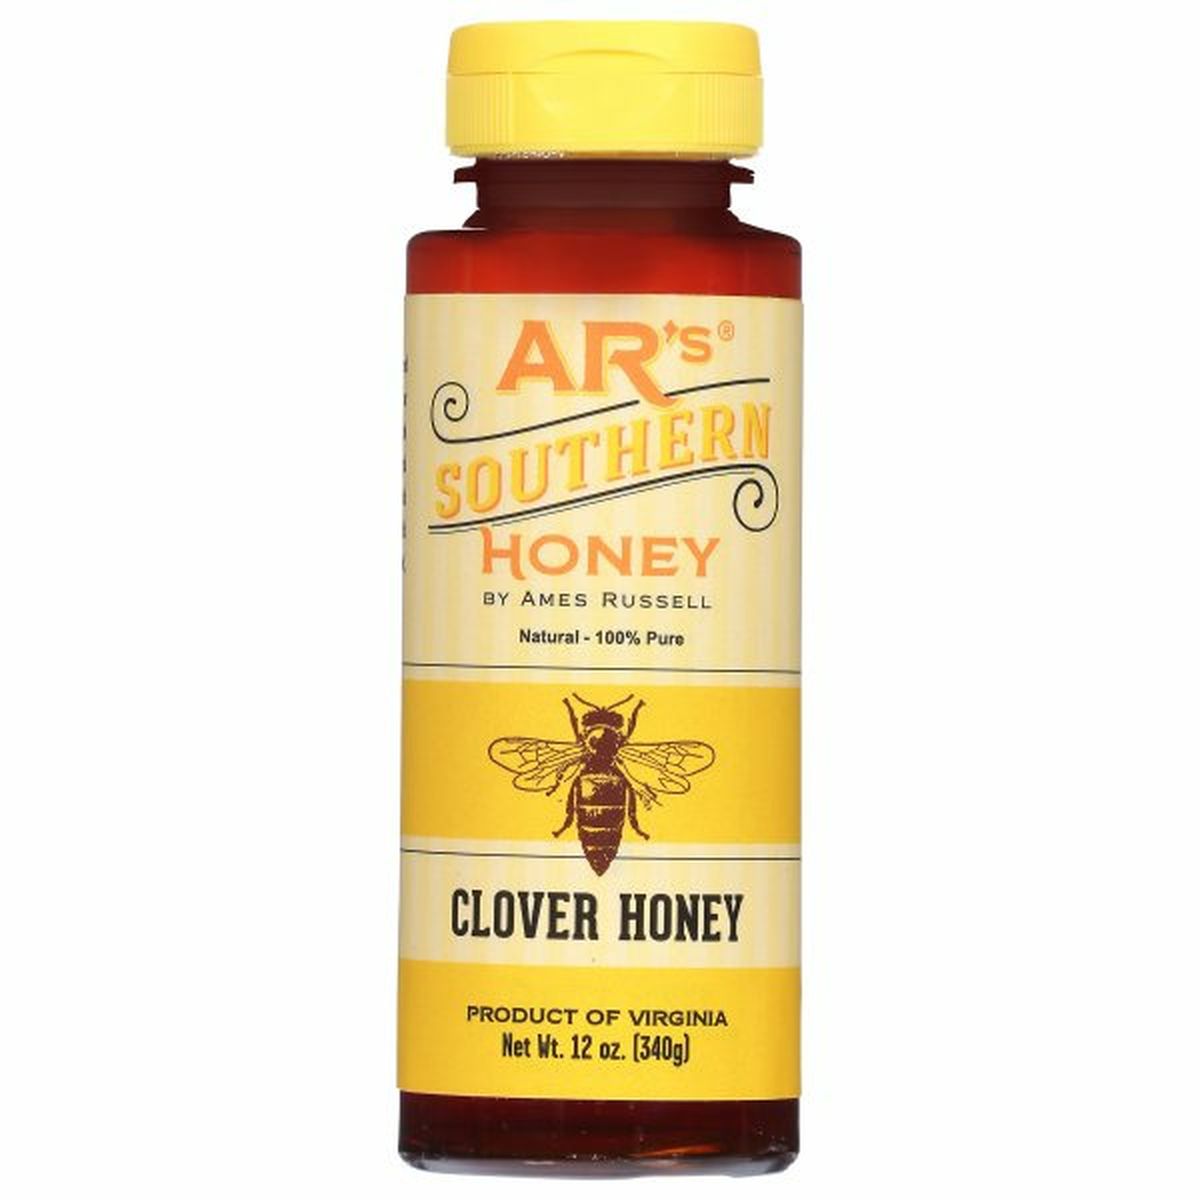 Calories in AR's Clover Honey